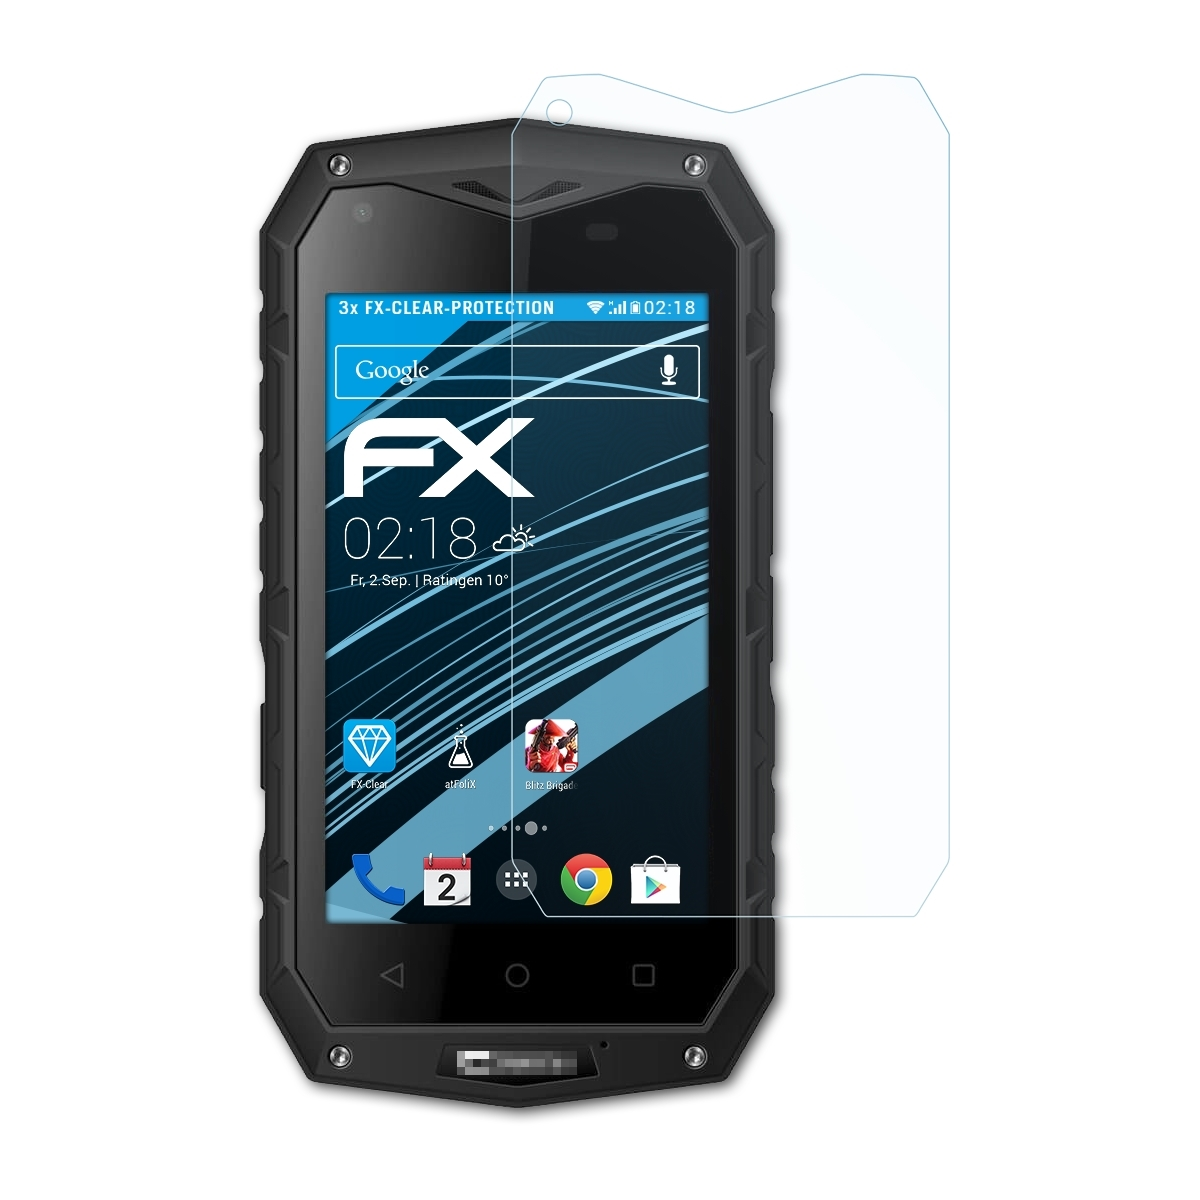 ATFOLIX 3x FX-Clear Displayschutz(für Crosscall Odyssey S1)